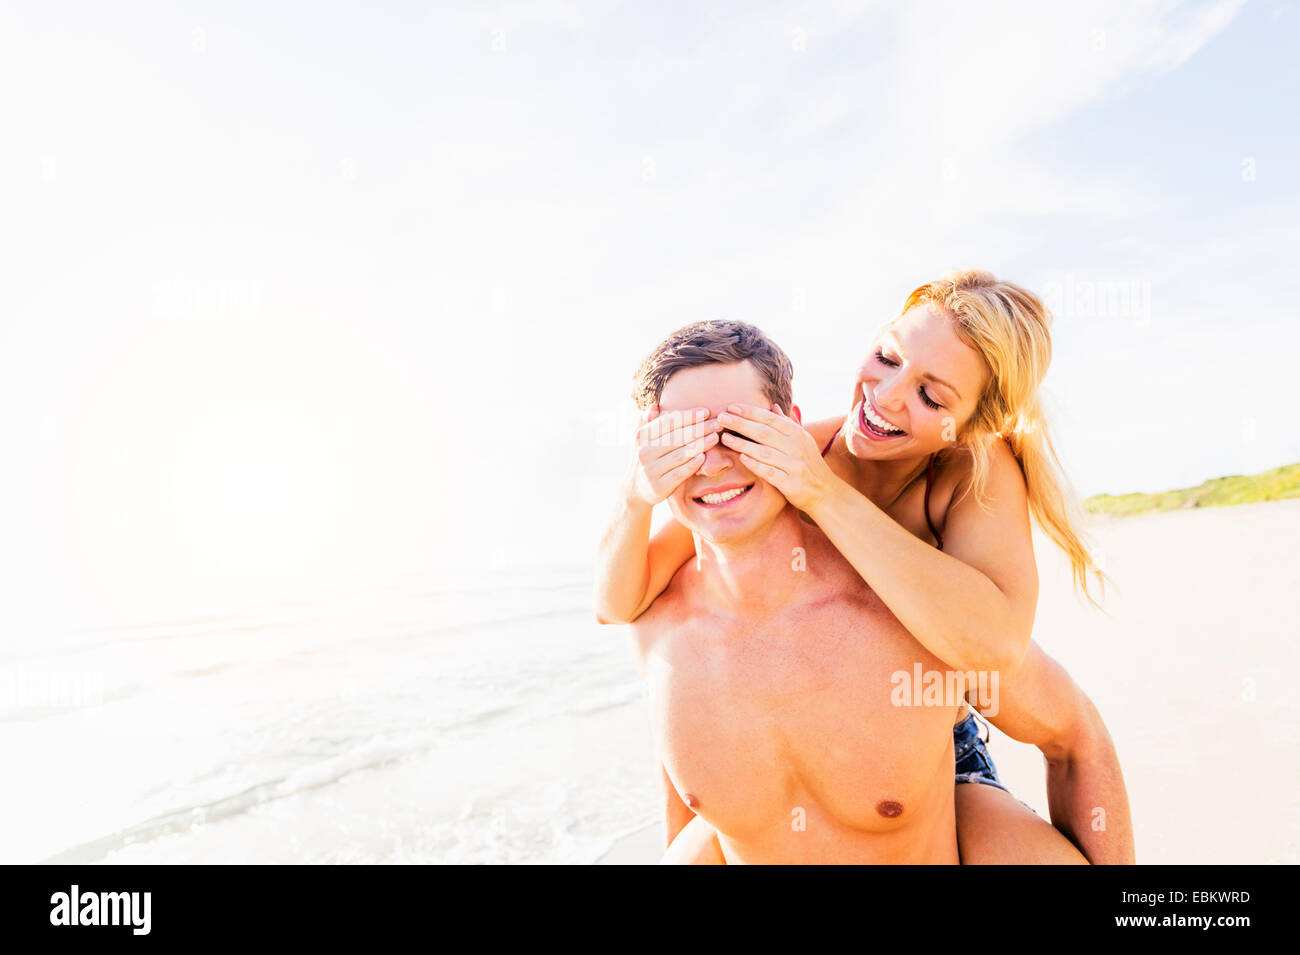 USA, Floride, Jupiter, petite amie couple on beach, fermant les yeux de petit ami avec palmiers Banque D'Images